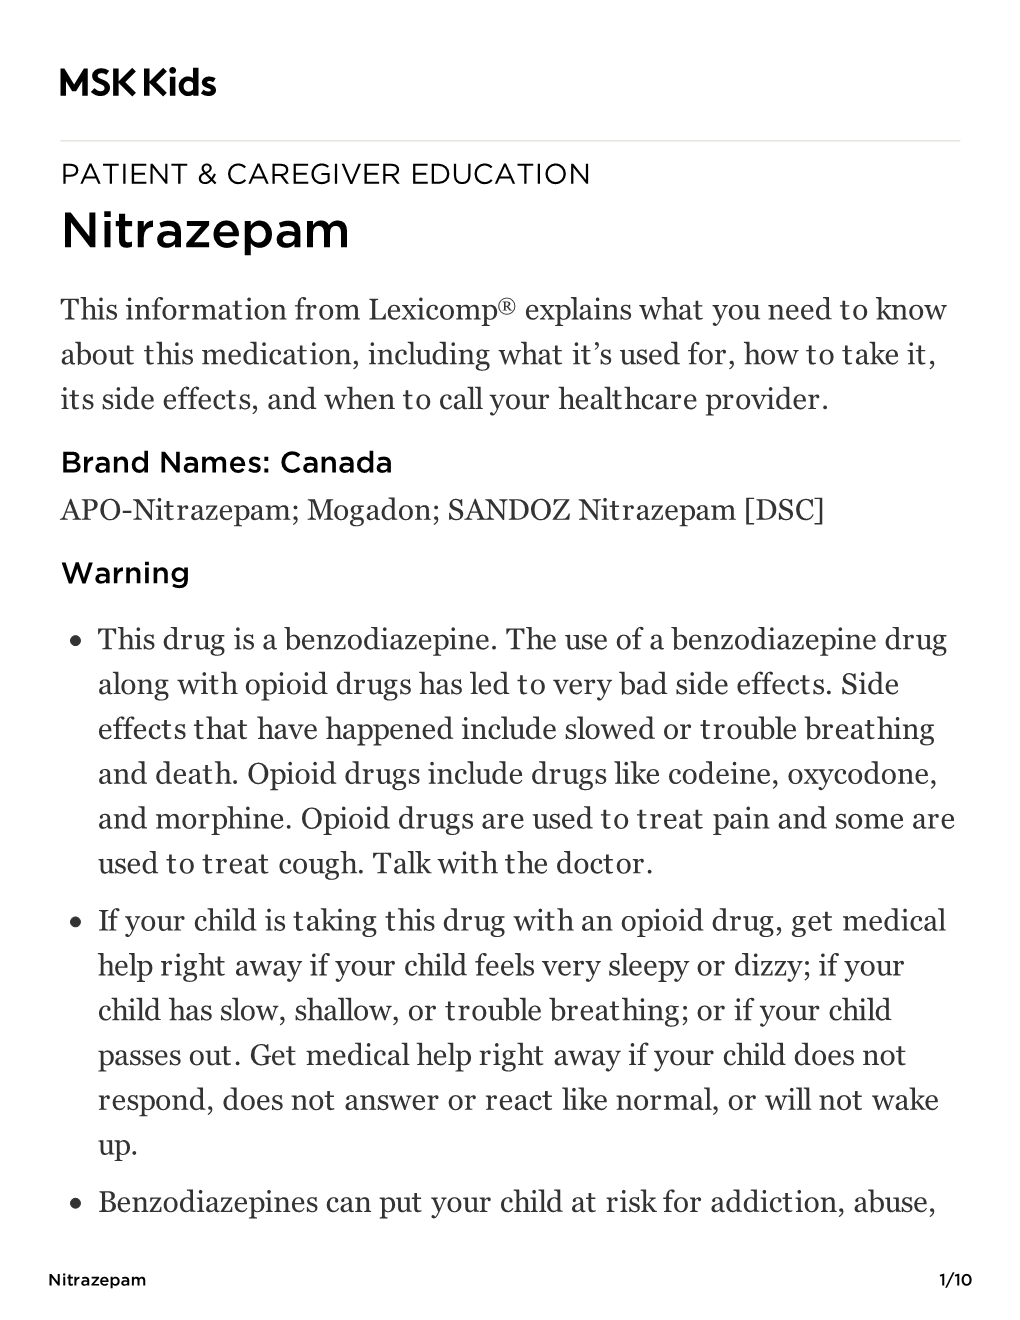 Nitrazepam: Pediatric Medication